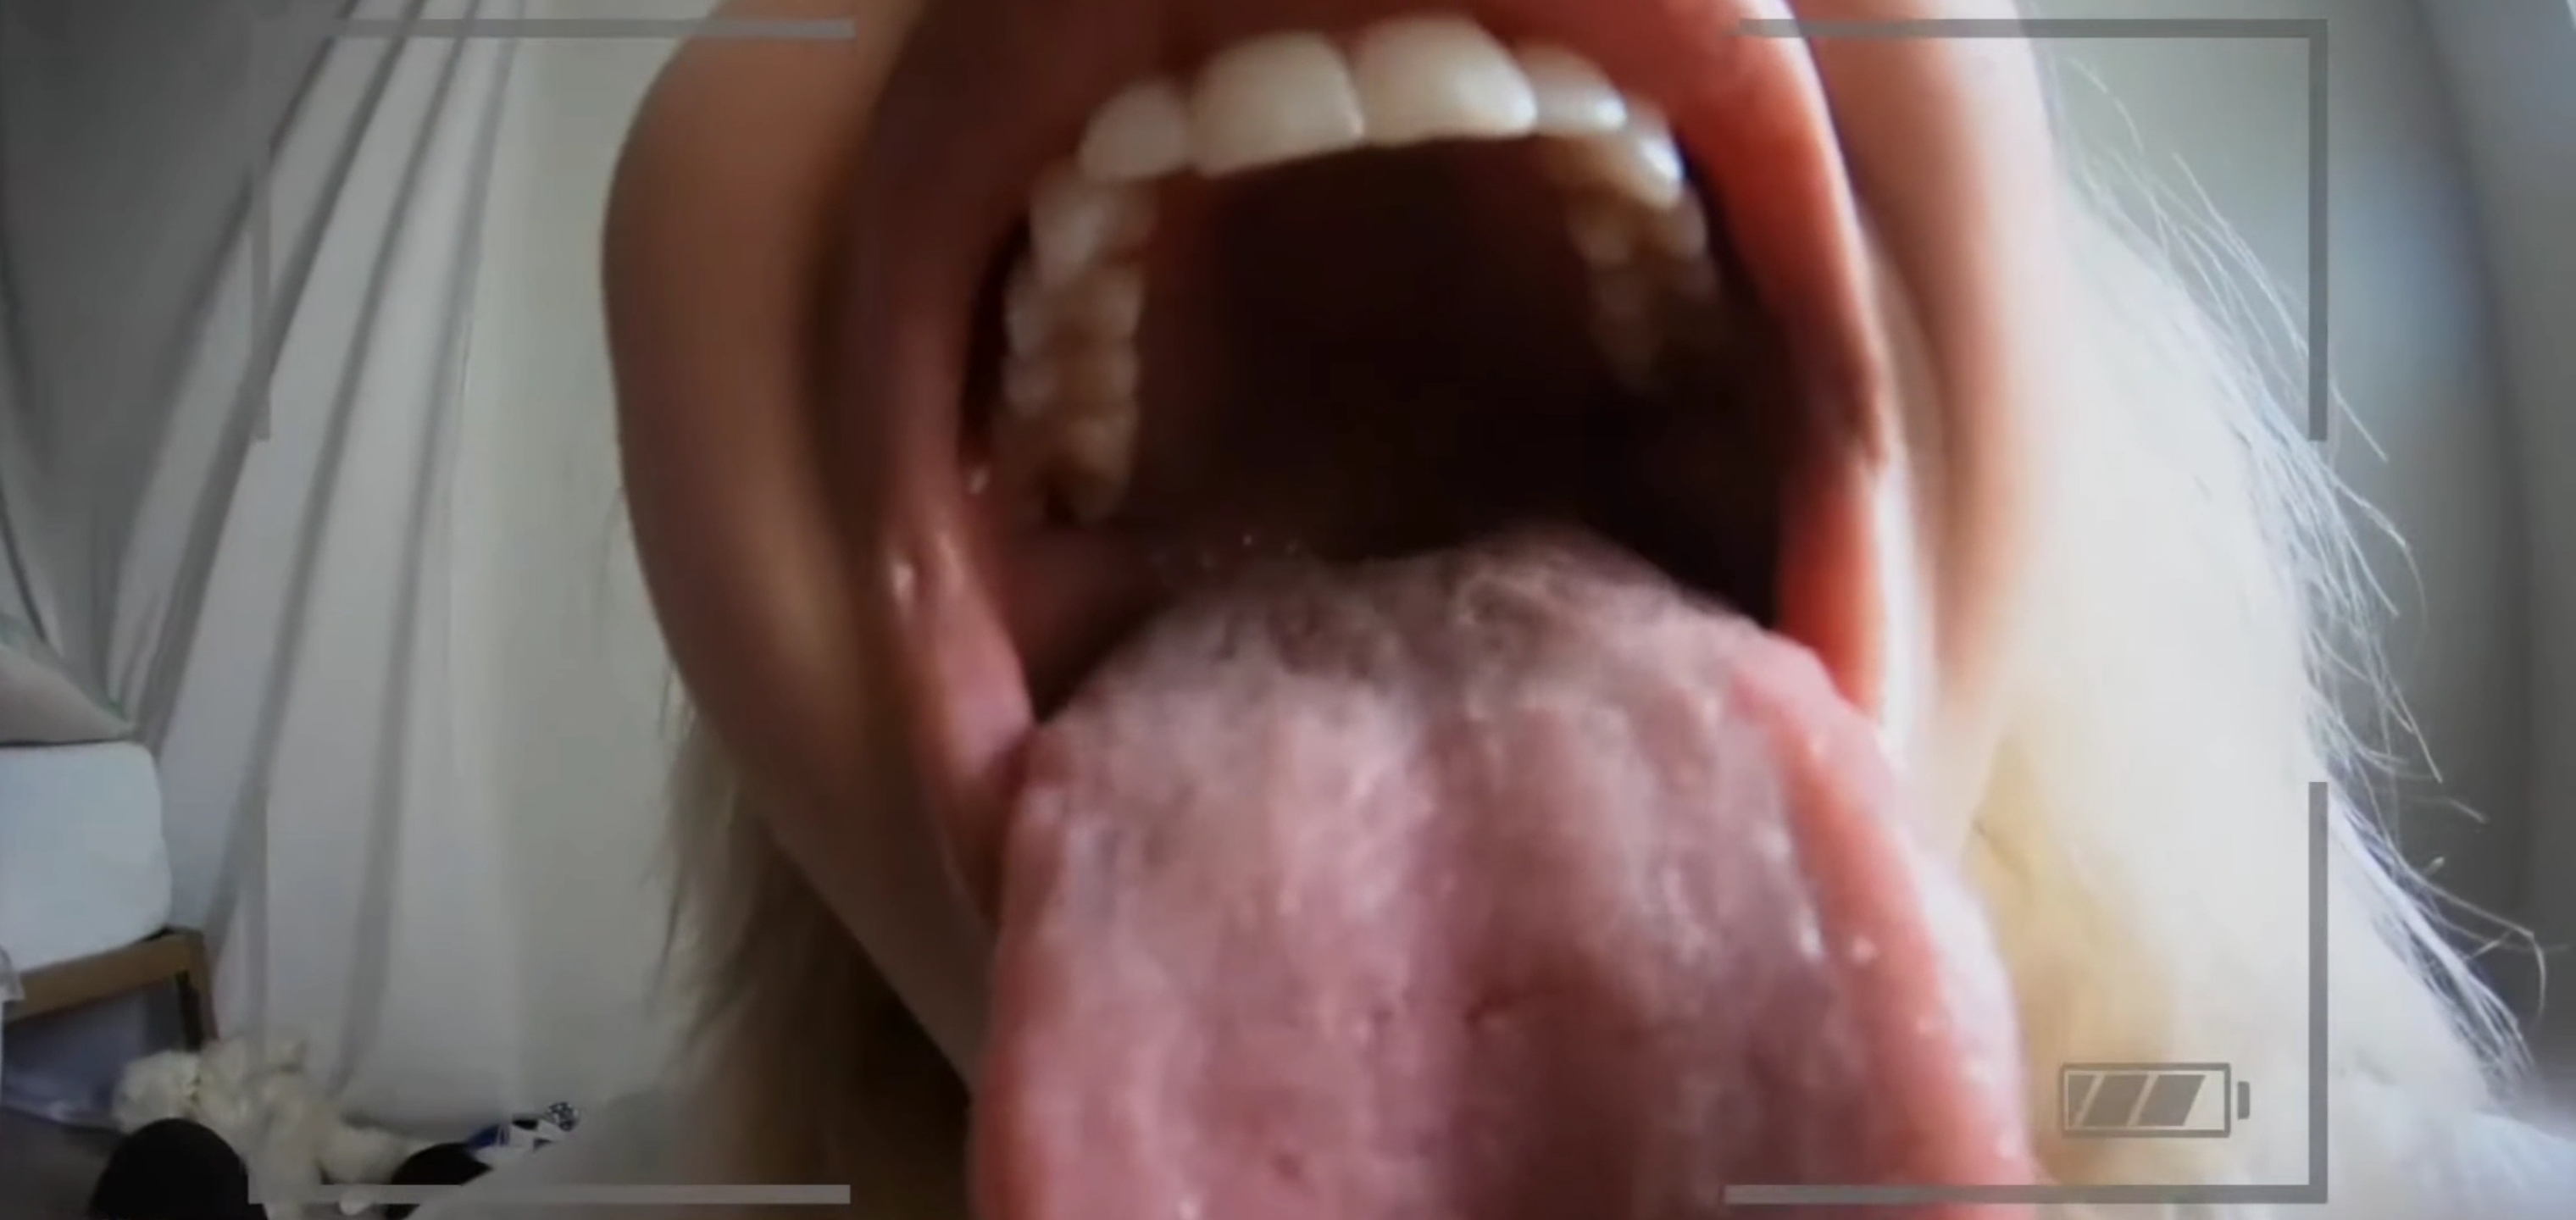 Giantess mouth vore pov